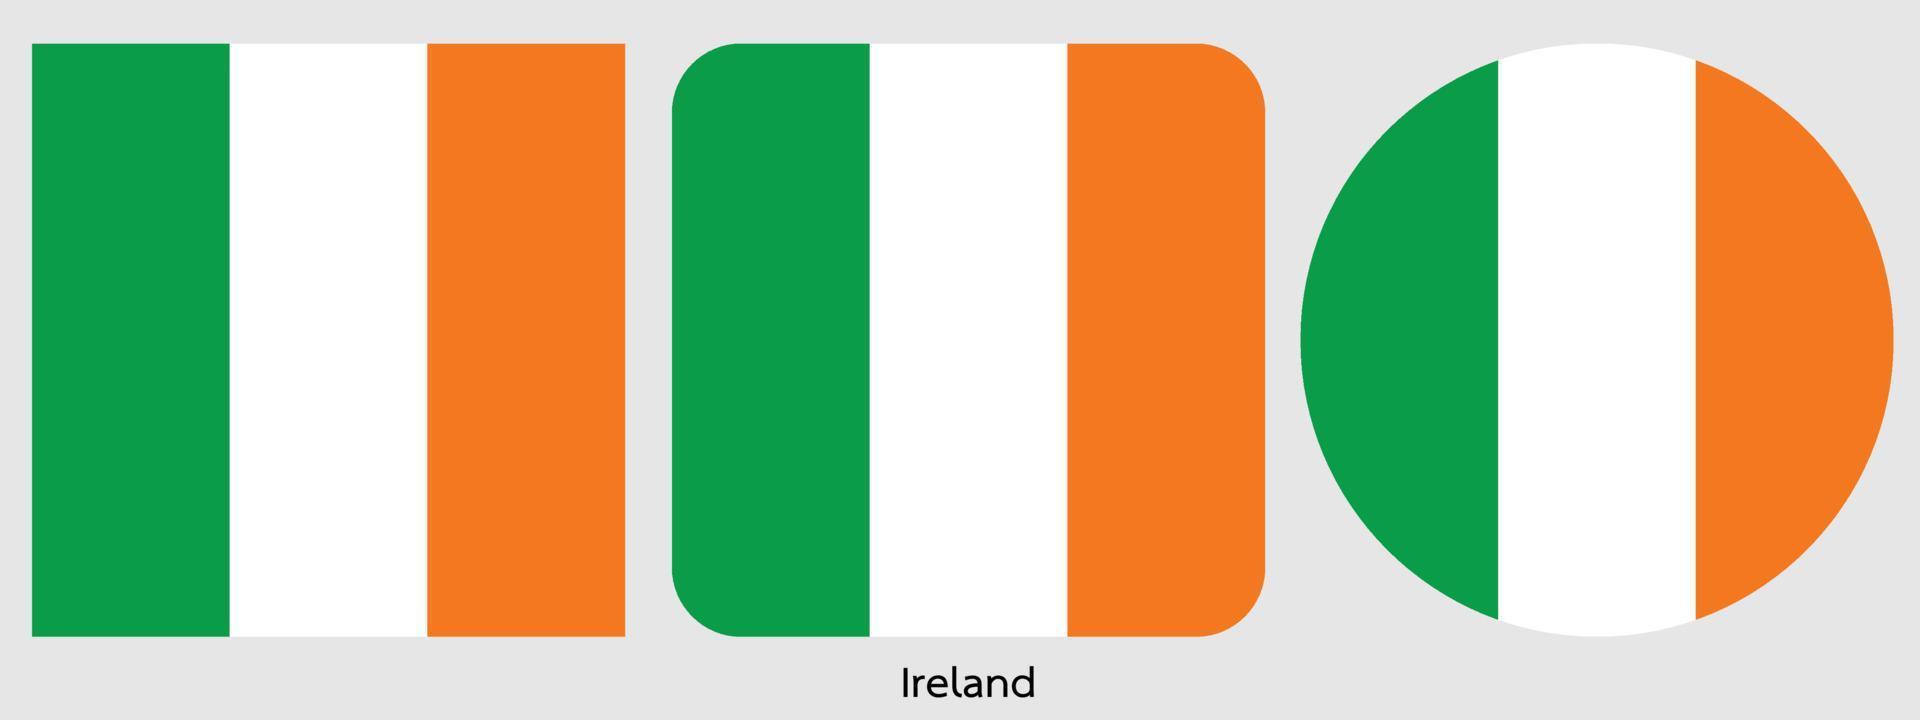 bandiera dell'Irlanda, illustrazione vettoriale